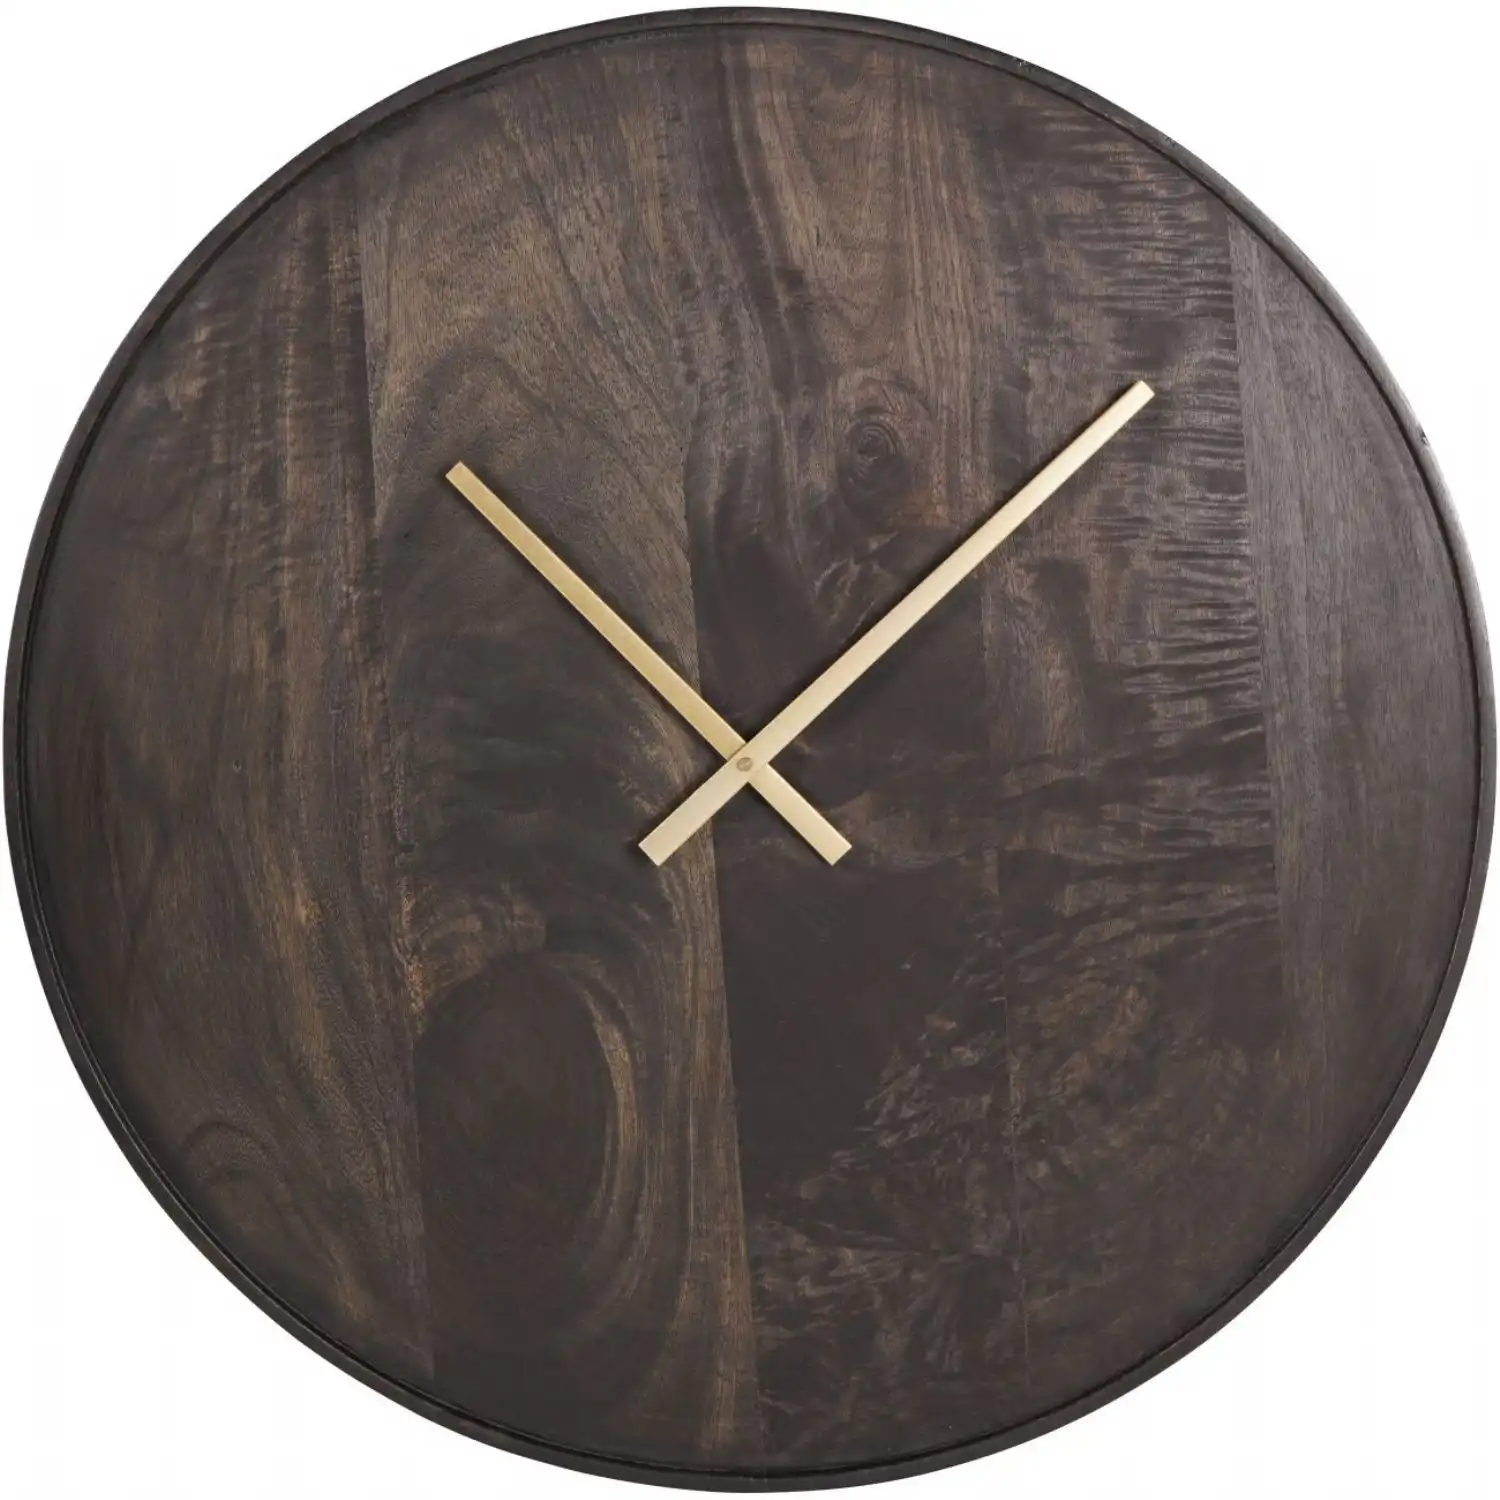 Mango Wood Bowl Wall Clock 41cm Dia S